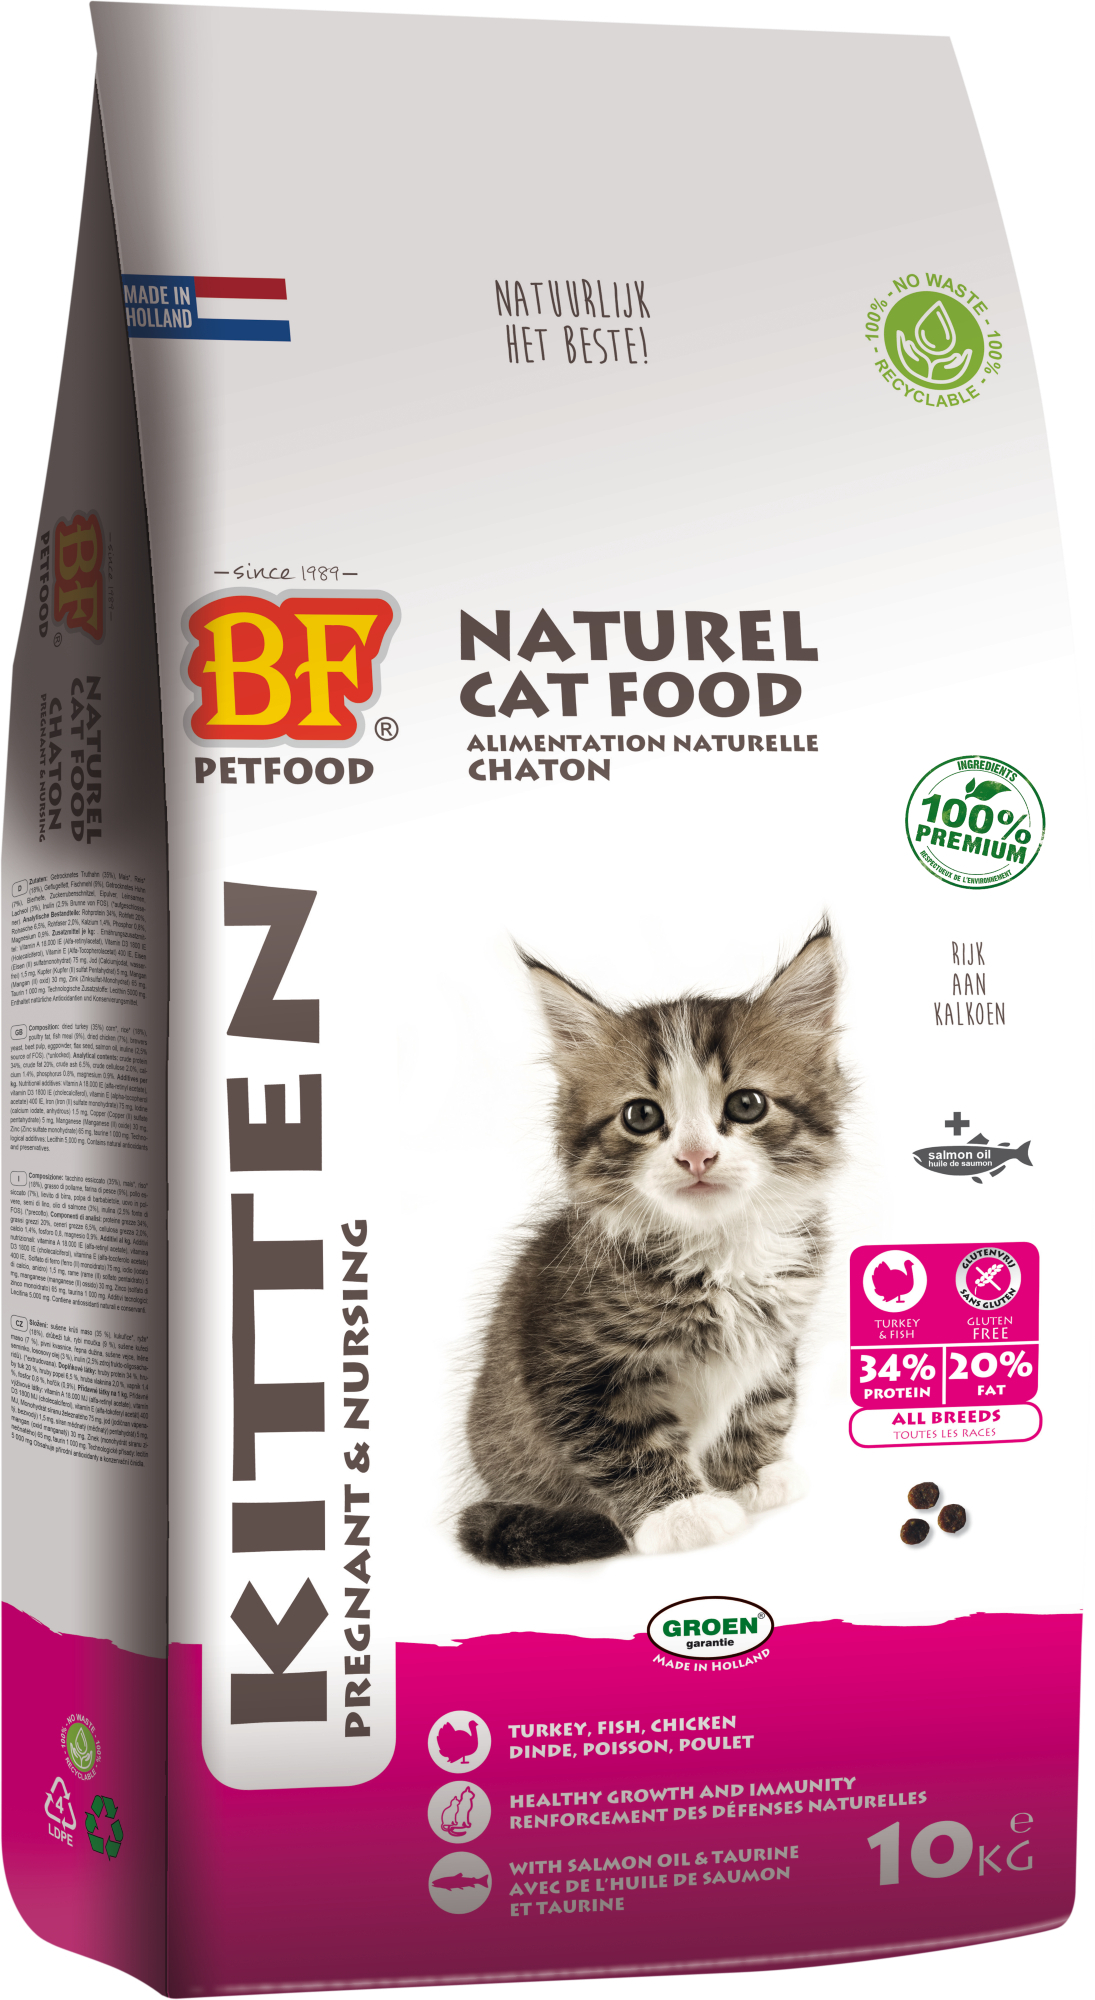 BIOFOOD Kitten 100% natürliches Trockenfutter mit Pute für Kätzchen